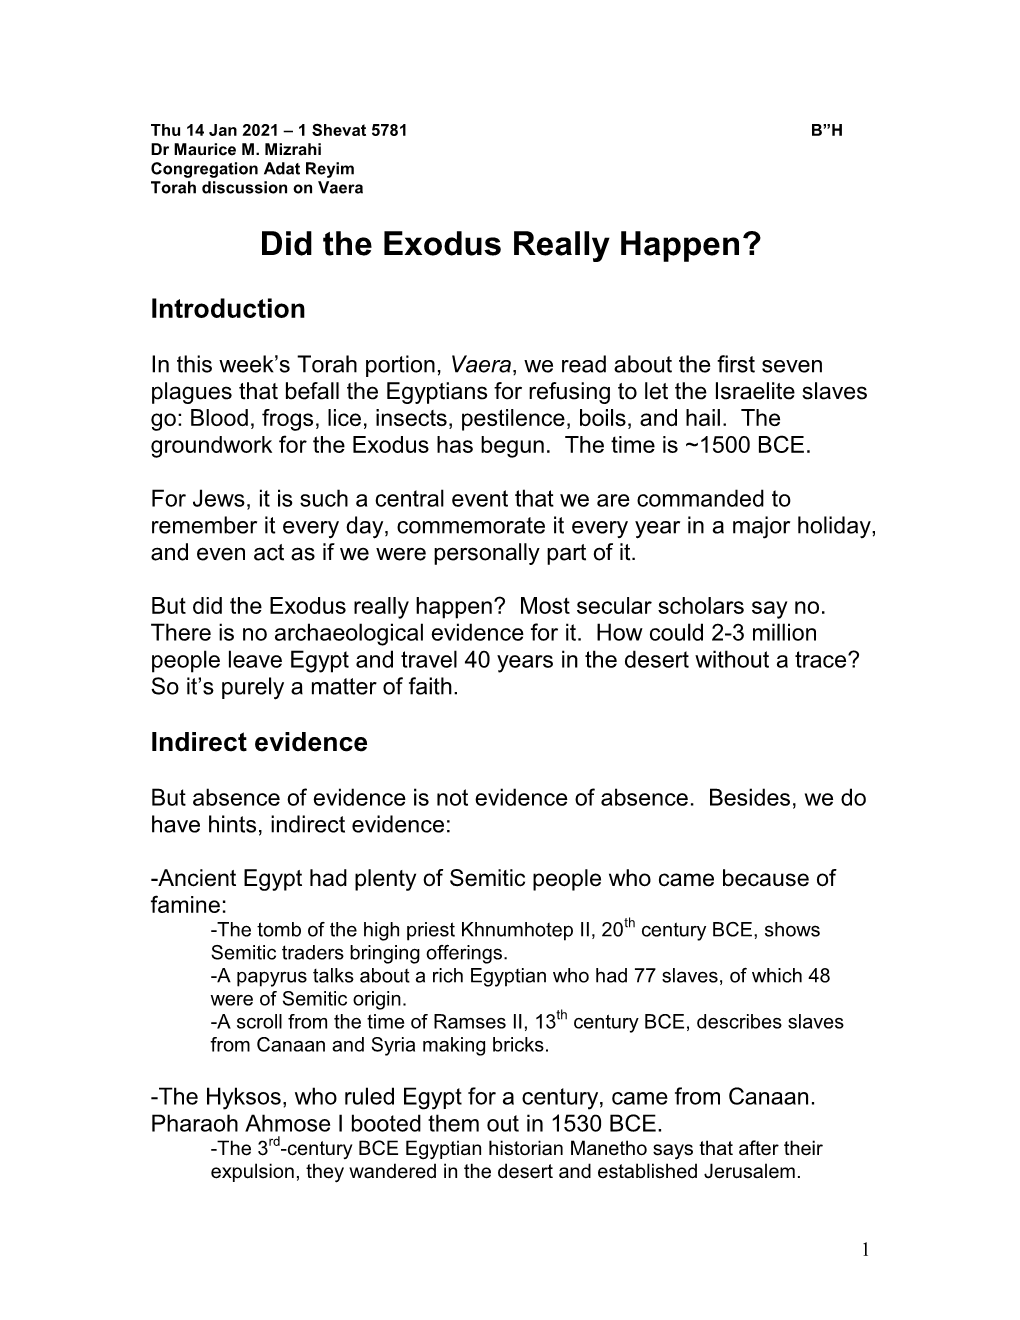 Did the Exodus Really Happen? (Vaera)